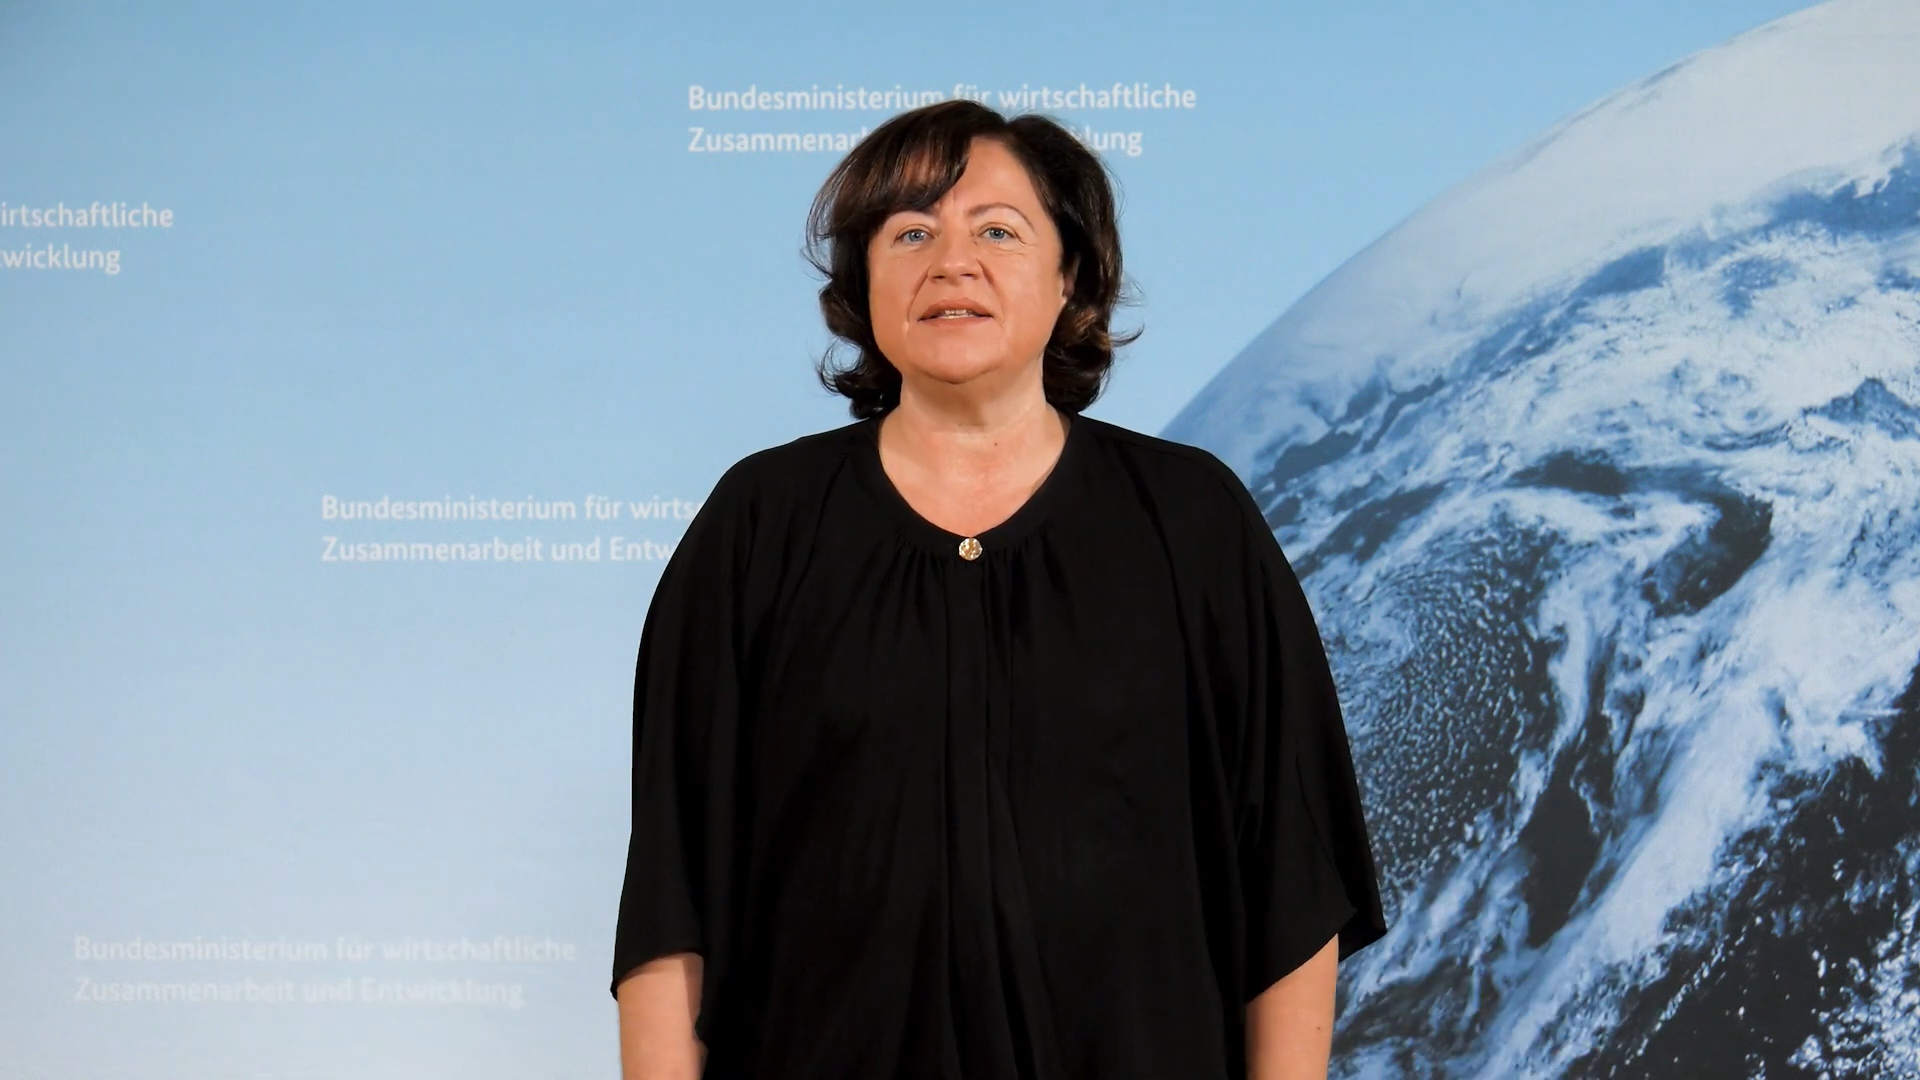 Standbild aus dem Video "3 Fragen an die Parla­men­ta­rische Staats­sekre­tärin Dr. Bärbel Kofler"